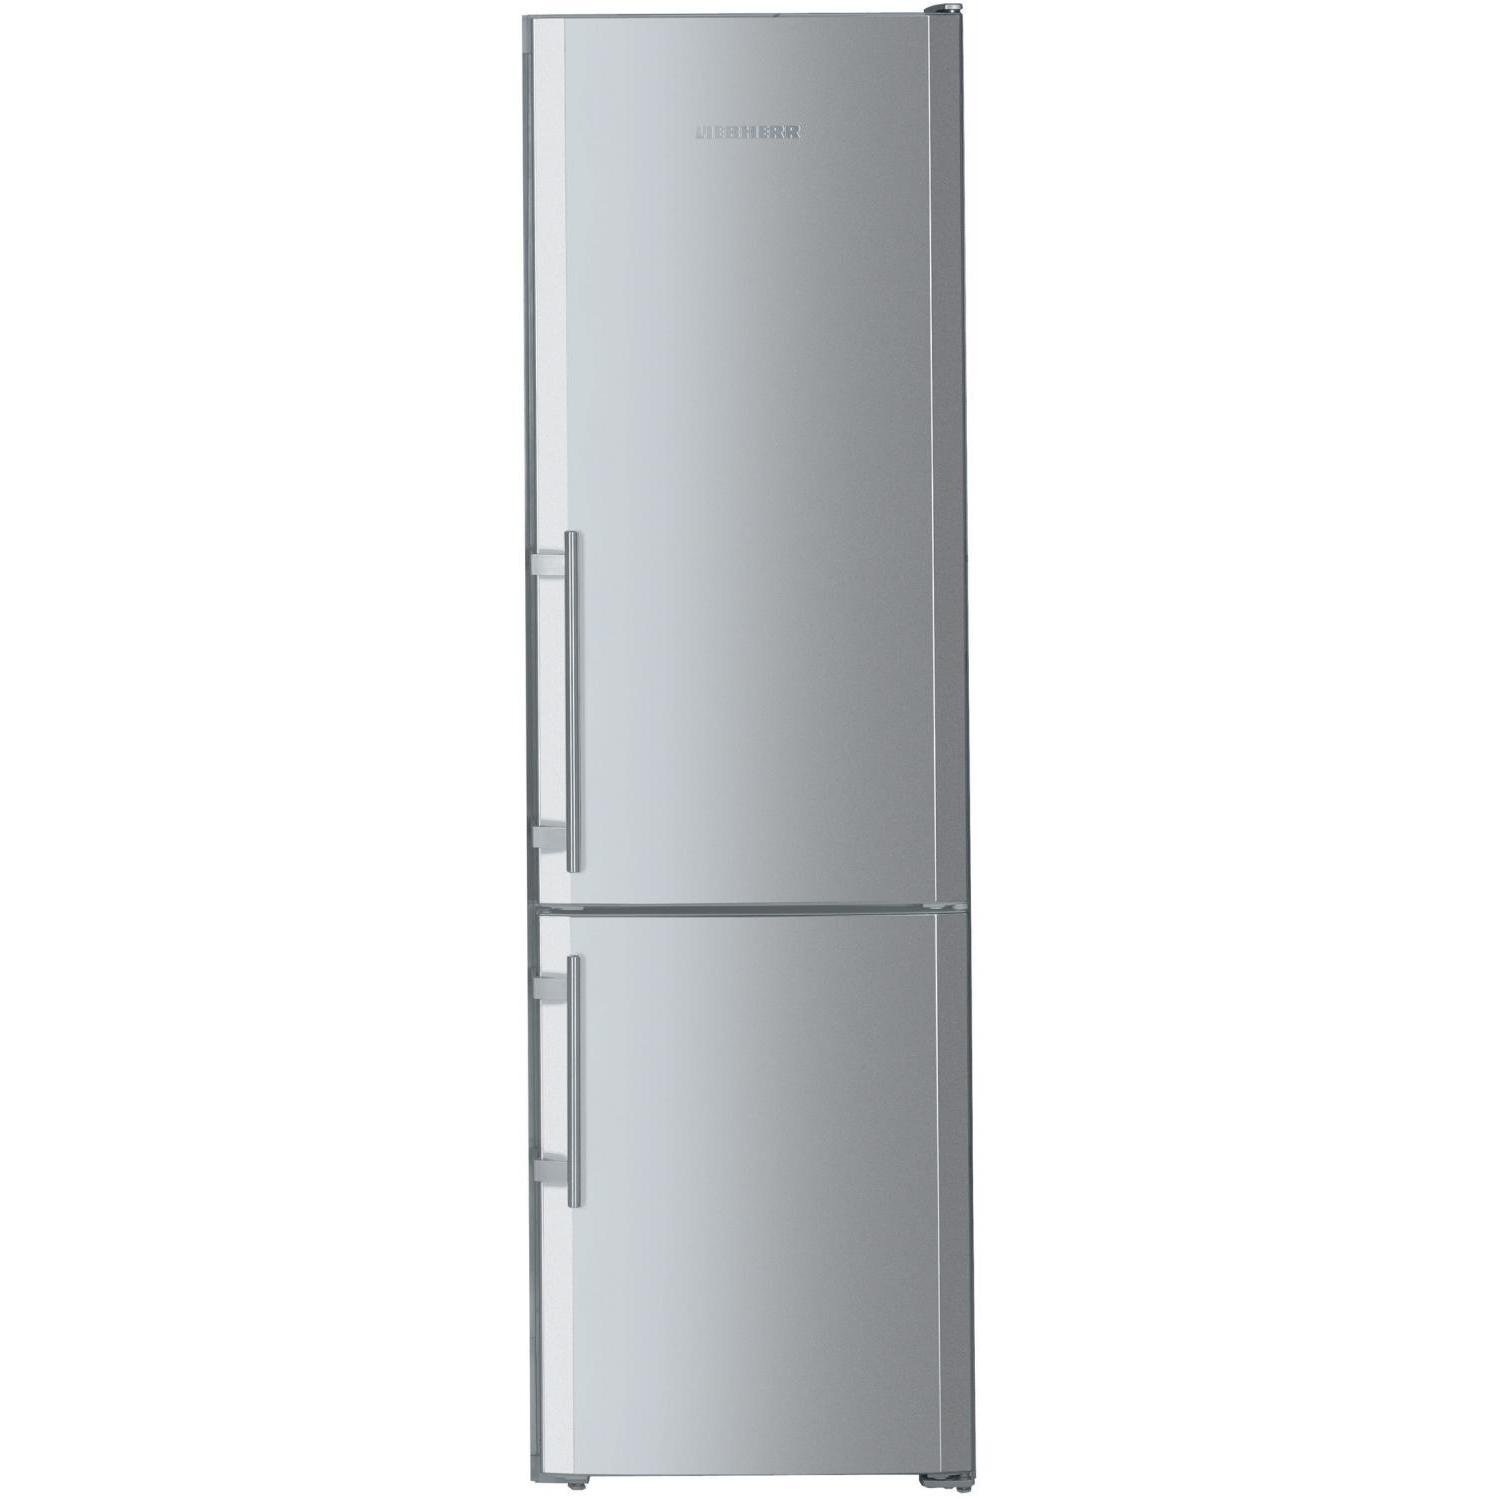 Холодильник Liebherr 55 см. Холодильник Liebherr двухкамерный высота 180 серебристый. Холодильник шириной 55 см двухкамерный Либхер бежевый. Холодильник Liebherr 55 см ширина.